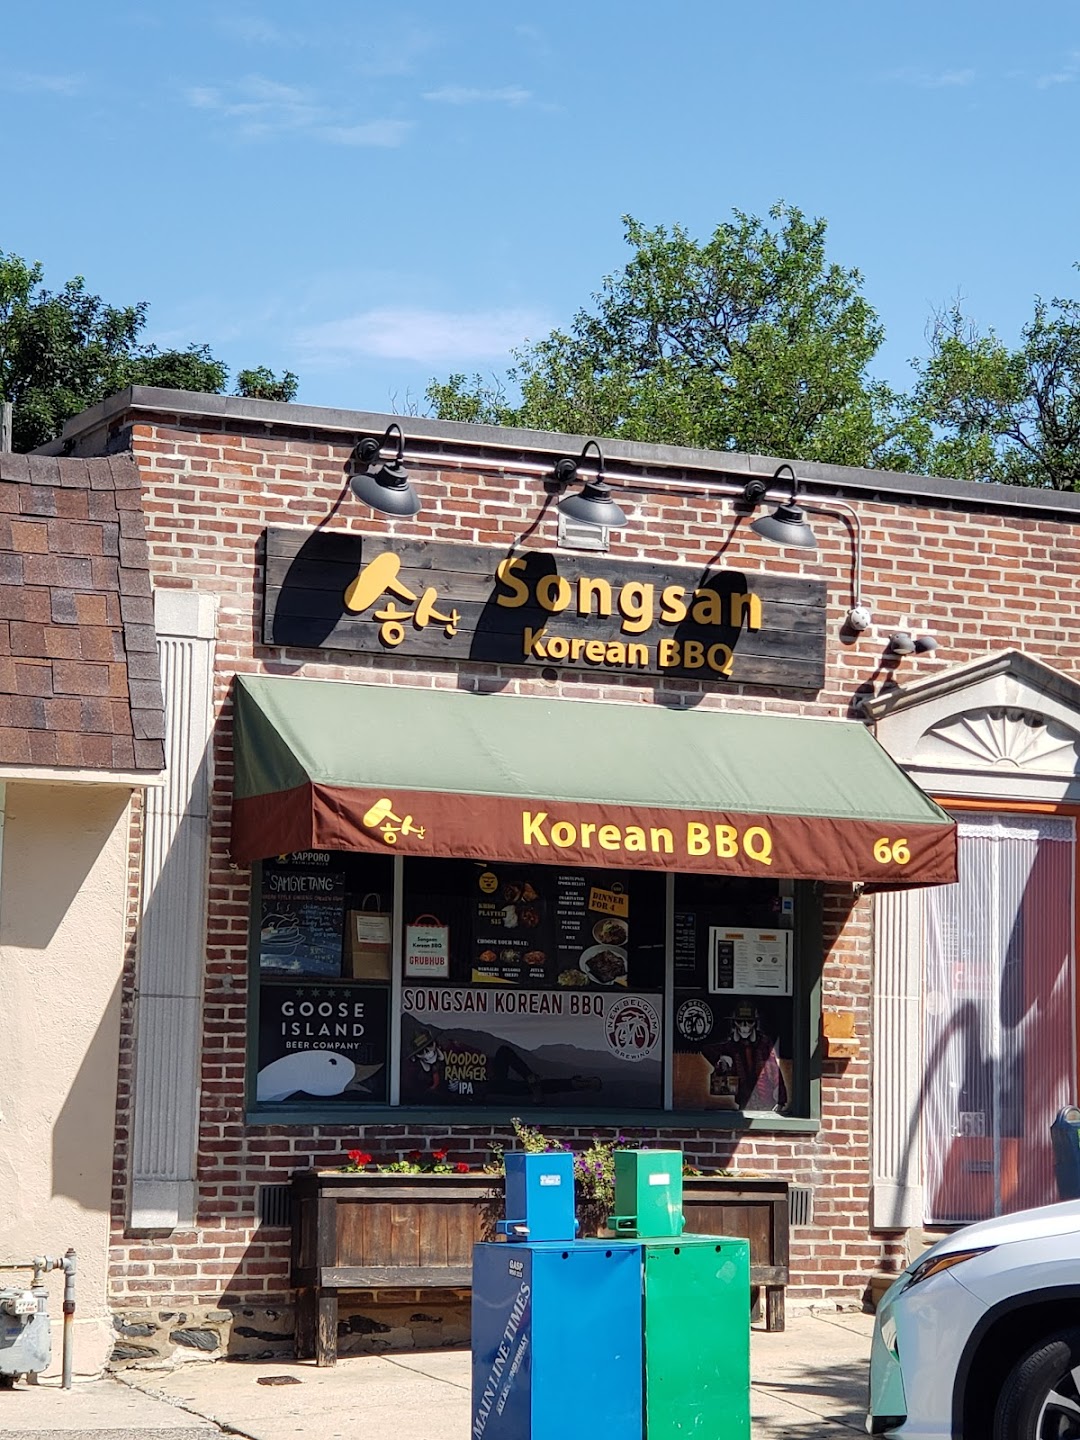 Songsan Korean BBQ